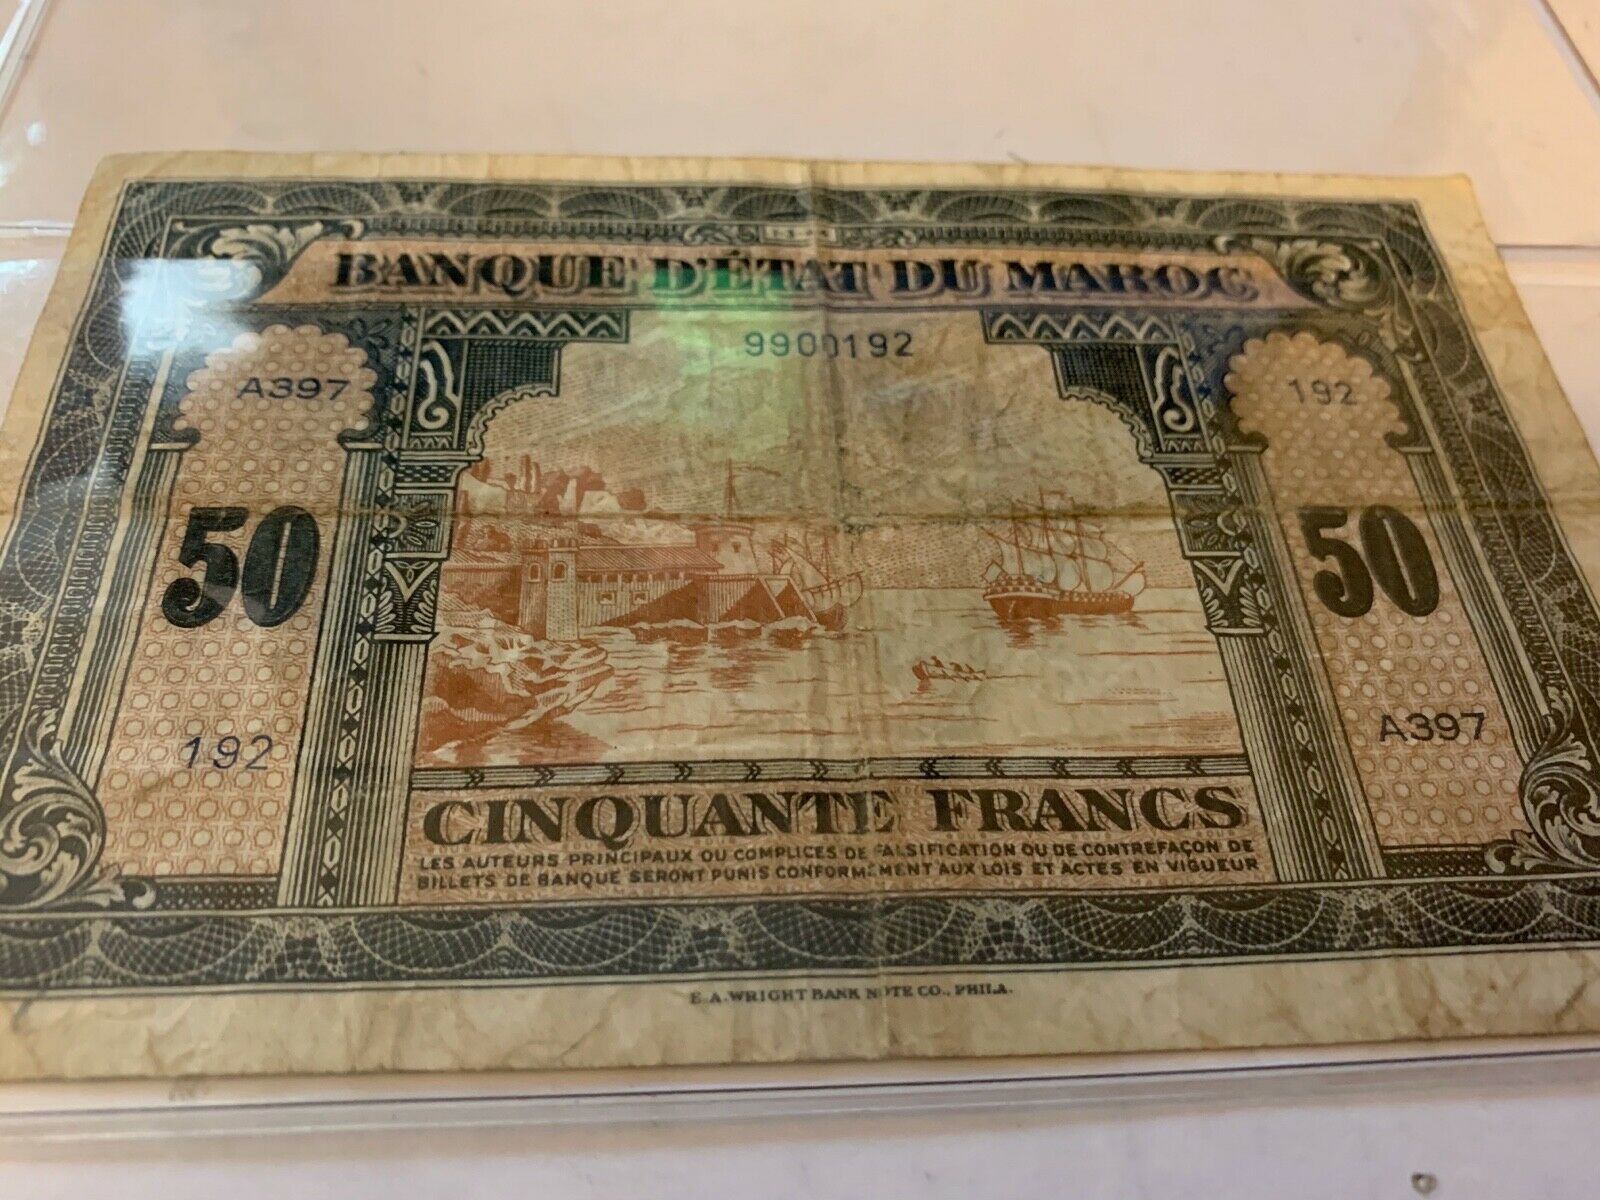 Morocco Banque D'etat Du Maroc 50 Francs 1943-44 Wwii